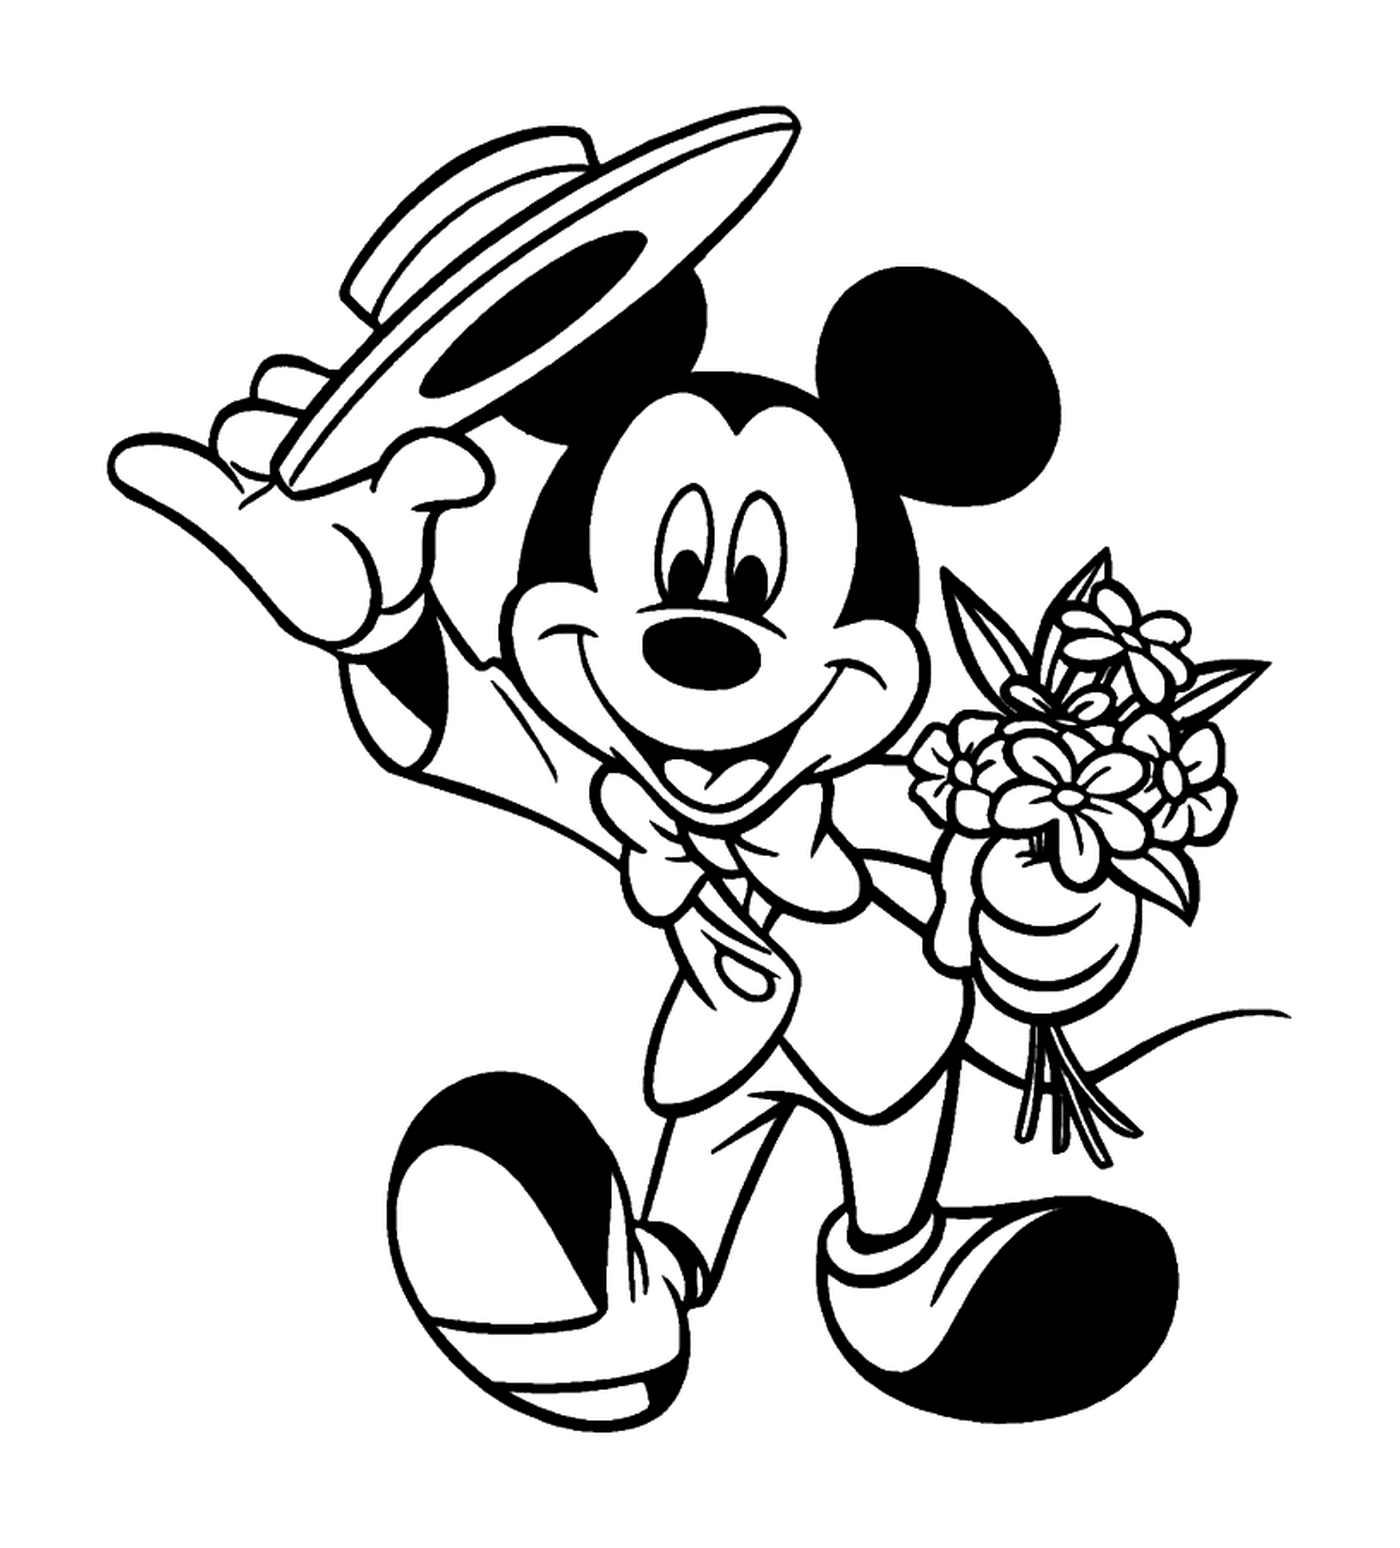   Mickey va à un rendez-vous galant : tenant un bouquet 